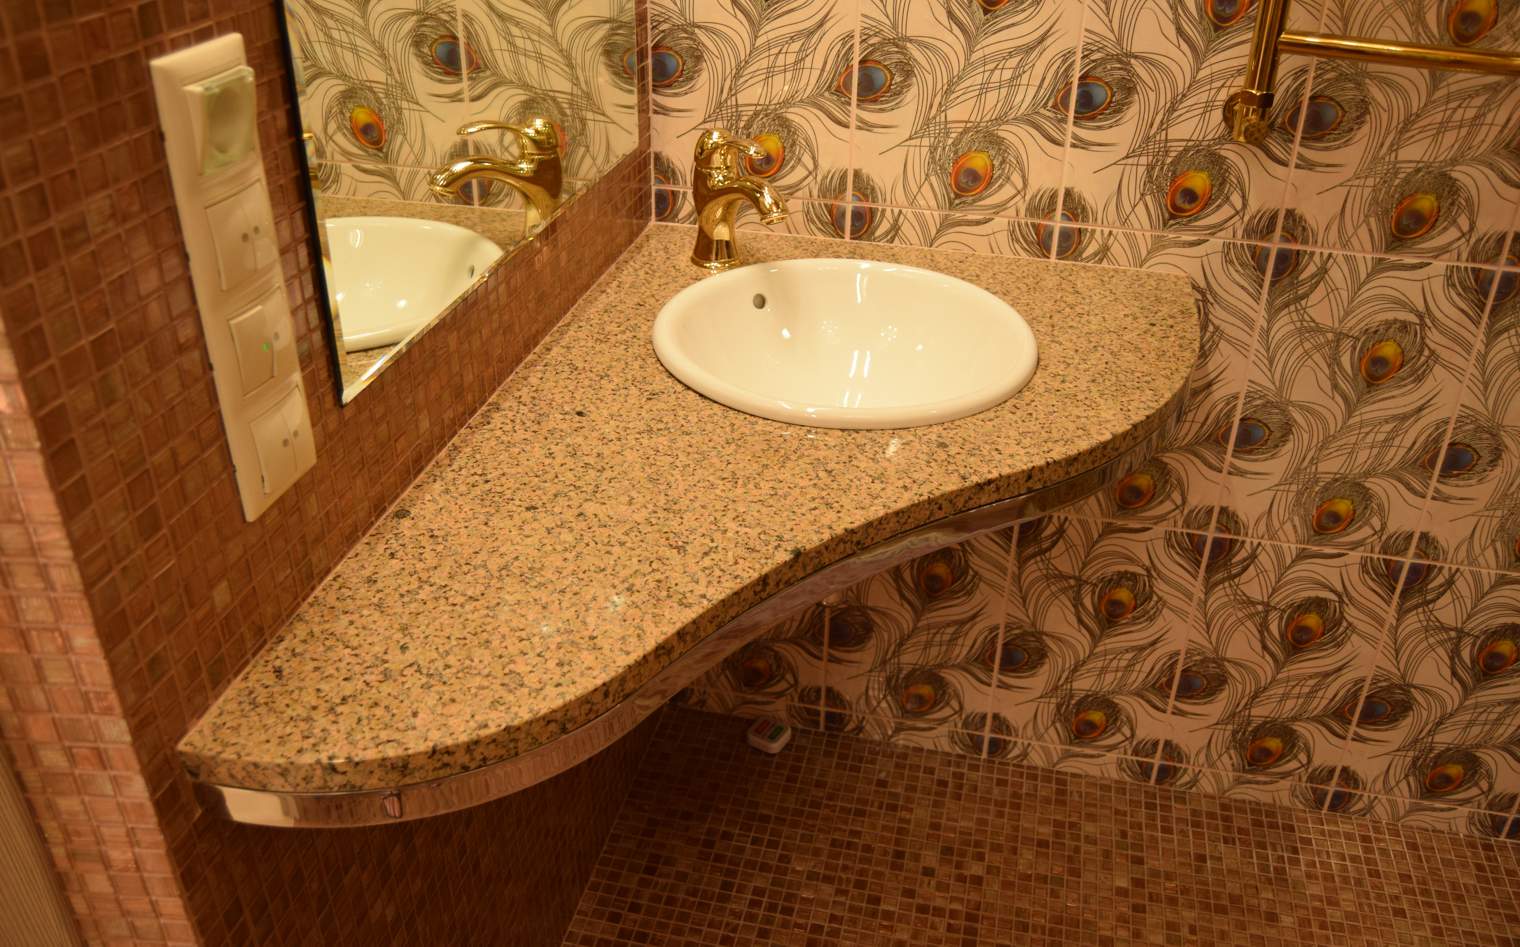 Столешницы для ванных комнат из натурального камня